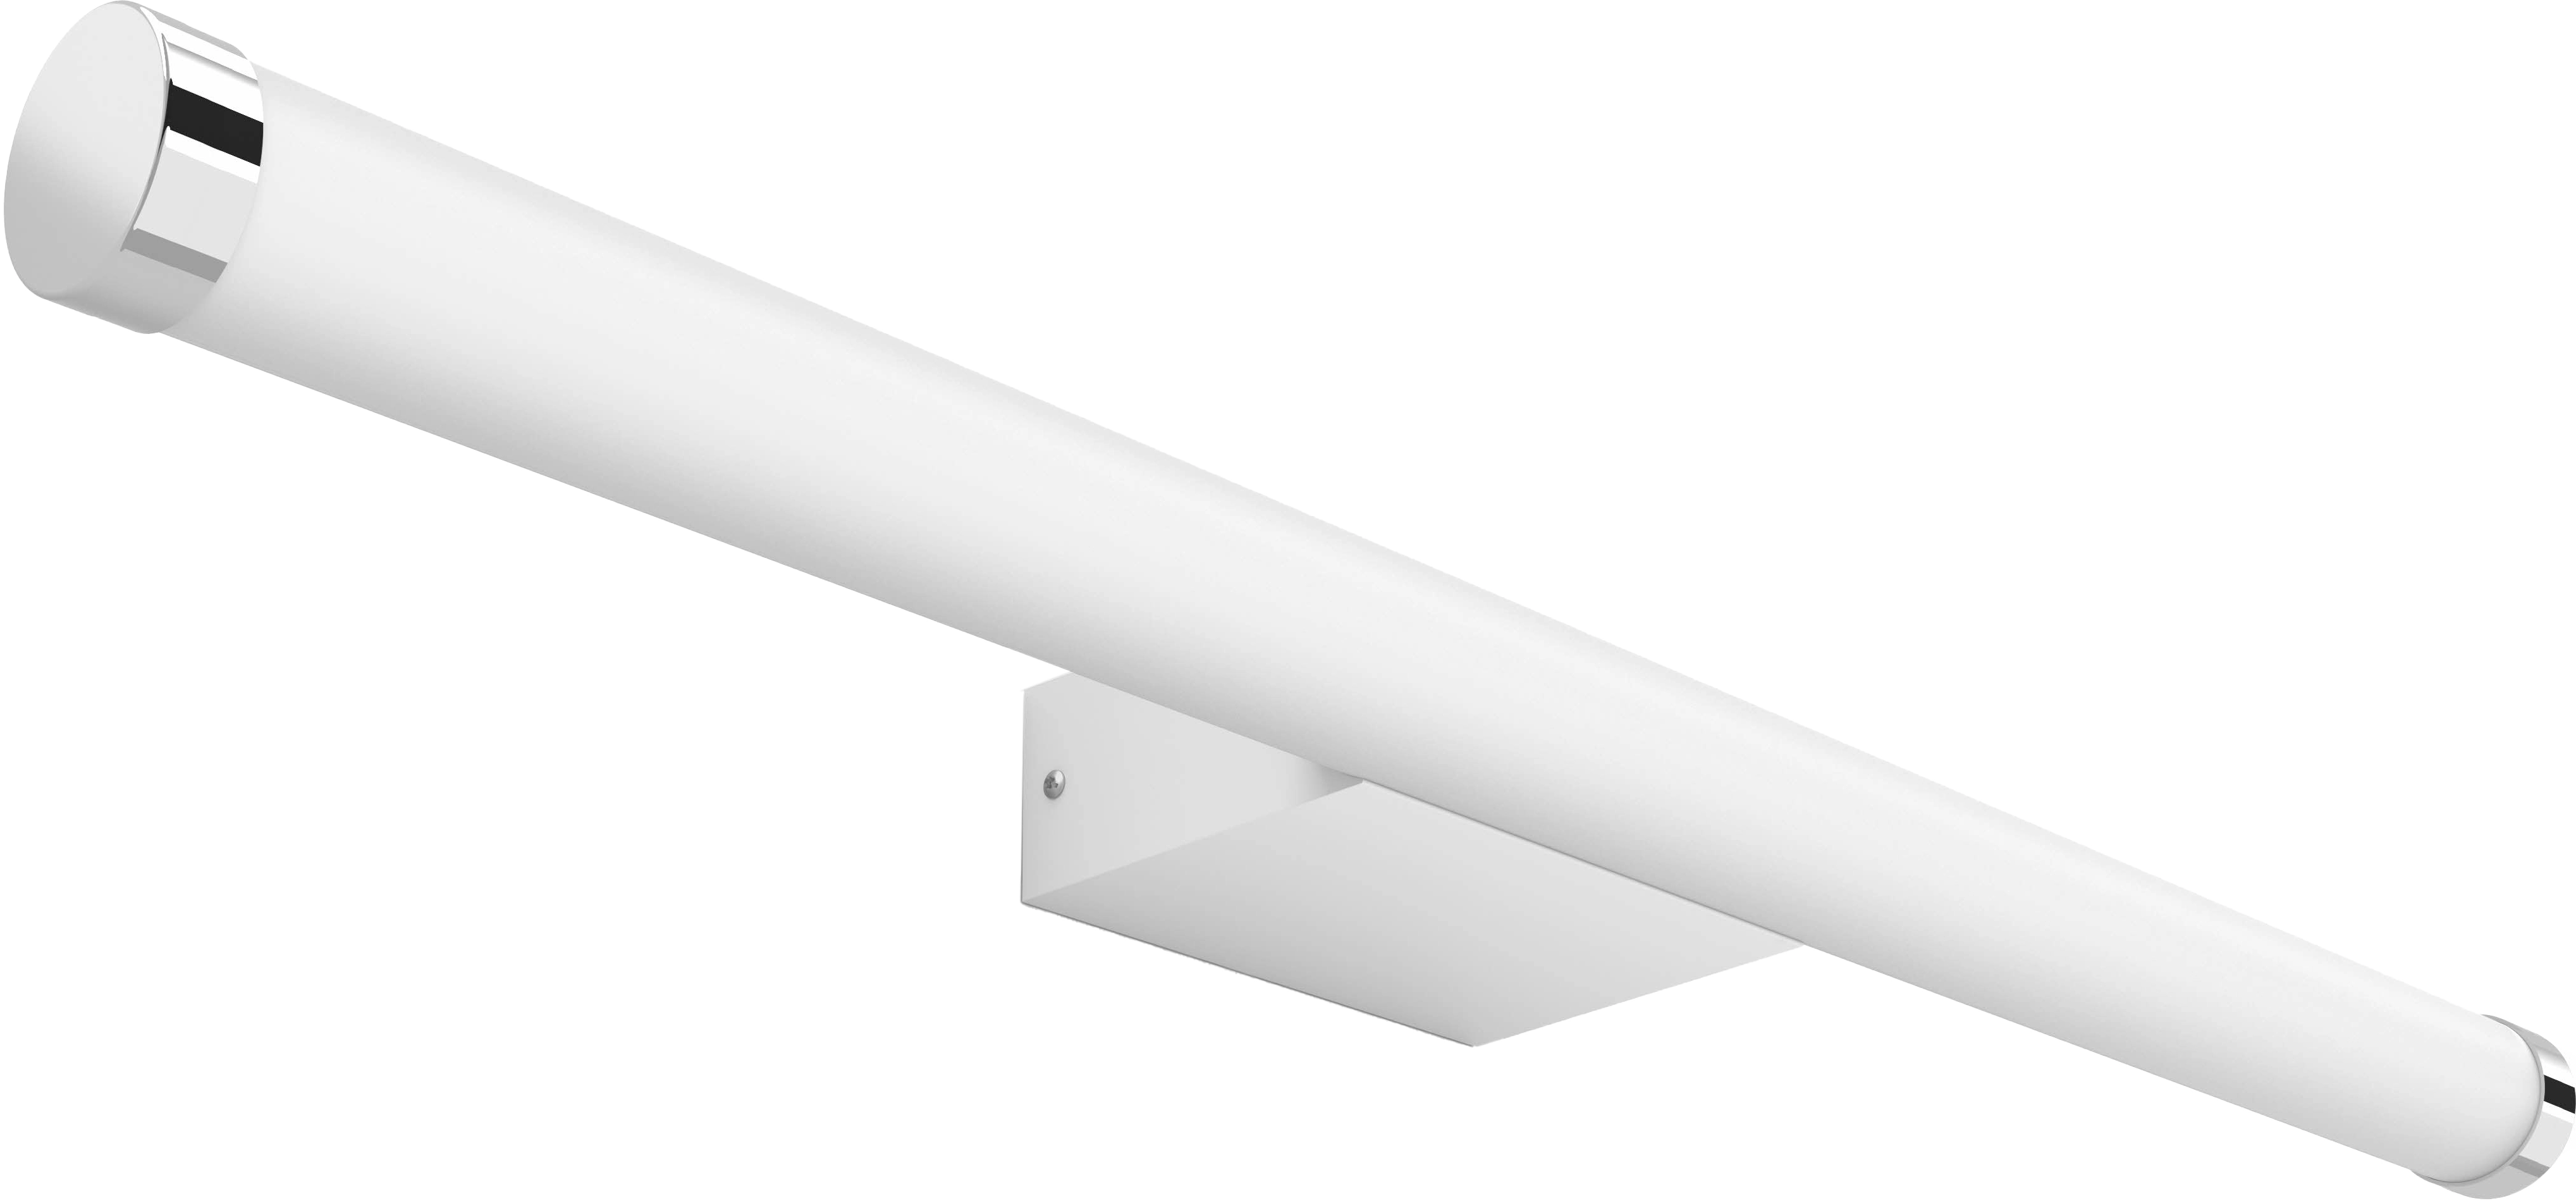 Philips Hue White Ambiance Spiegel mit Beleuchtung Adore Weiß 2400lm  Dimmschalt. kaufen bei OBI